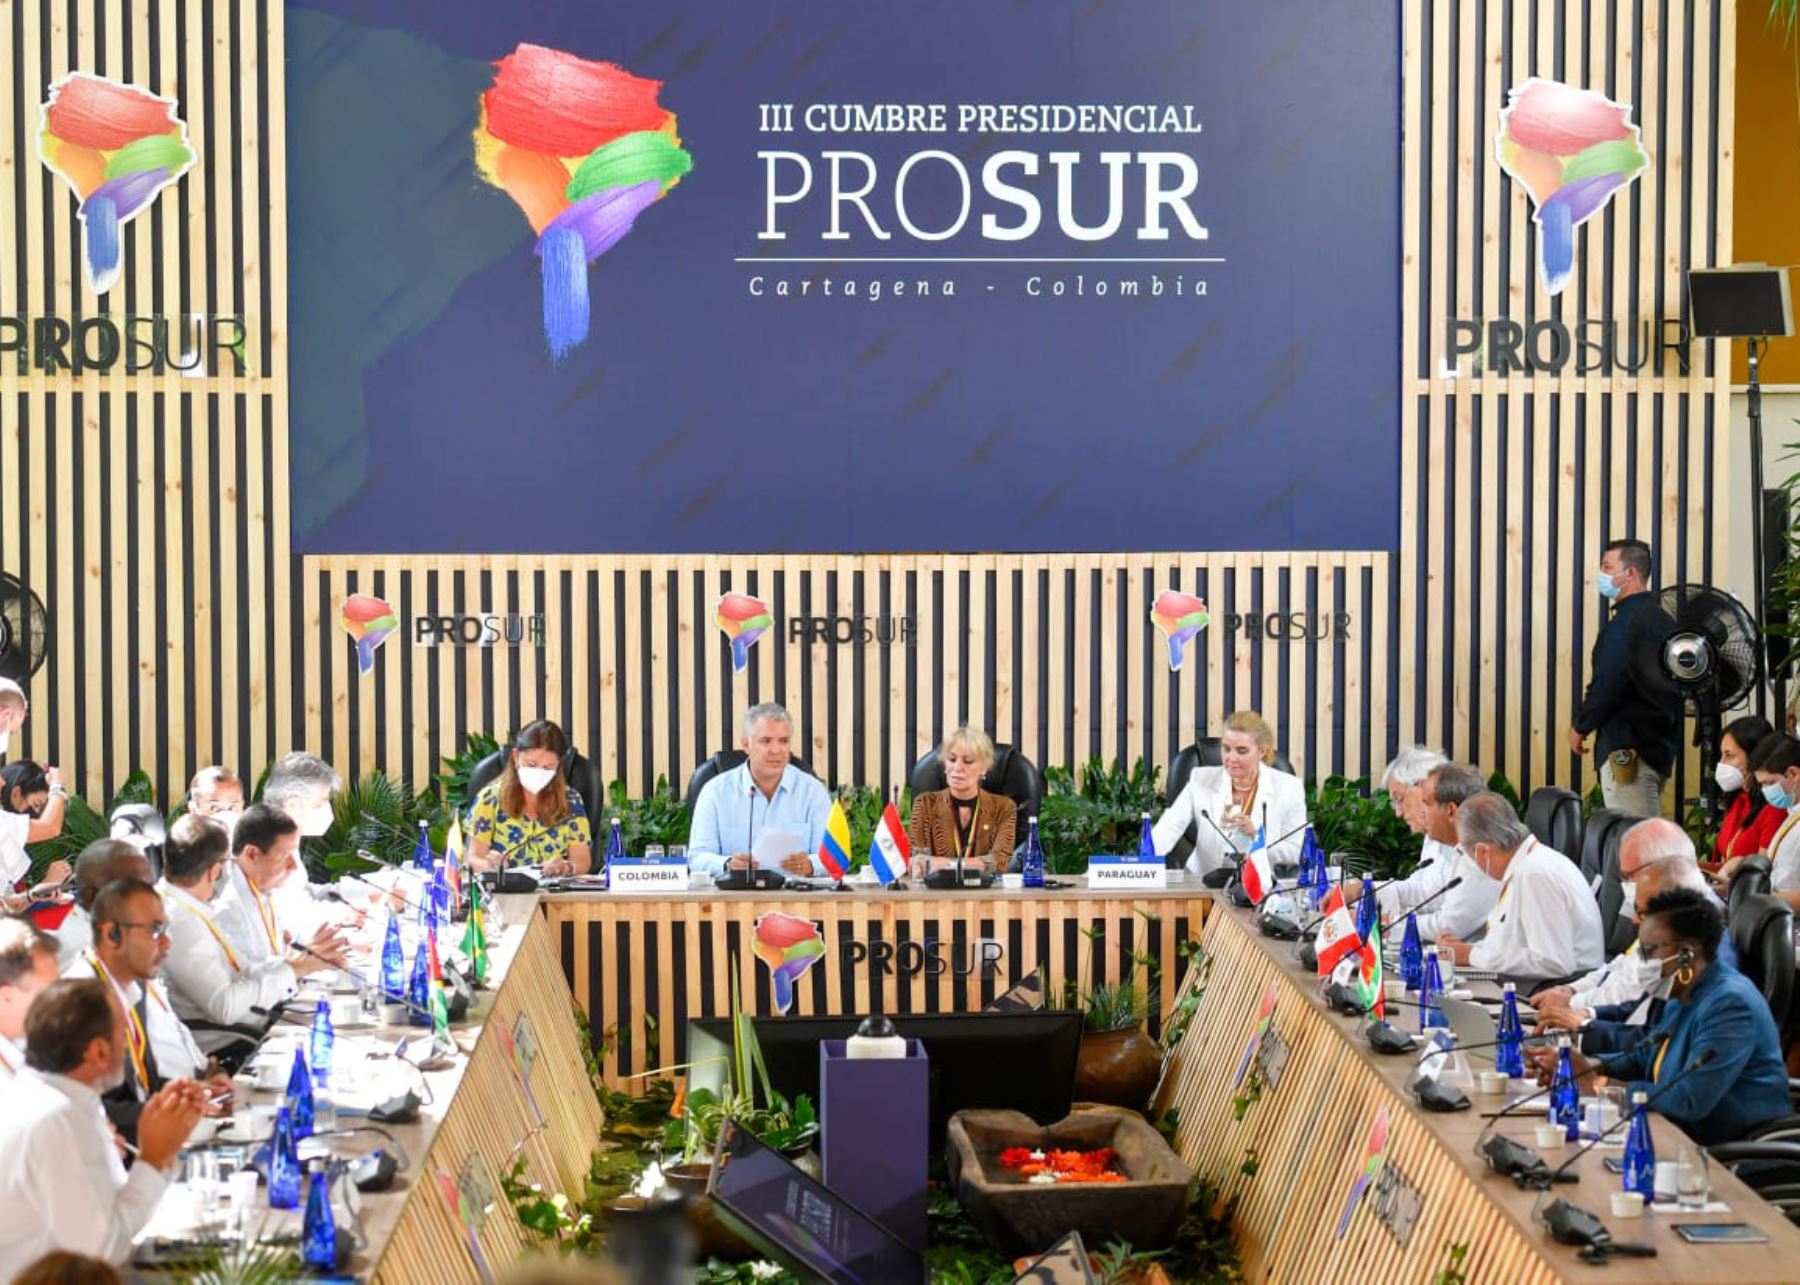 Canciller Oscar Maúrtua participa en III Cumbre Presidencial de Prosur en Colombia, en representación del presidente Pedro Castillo.